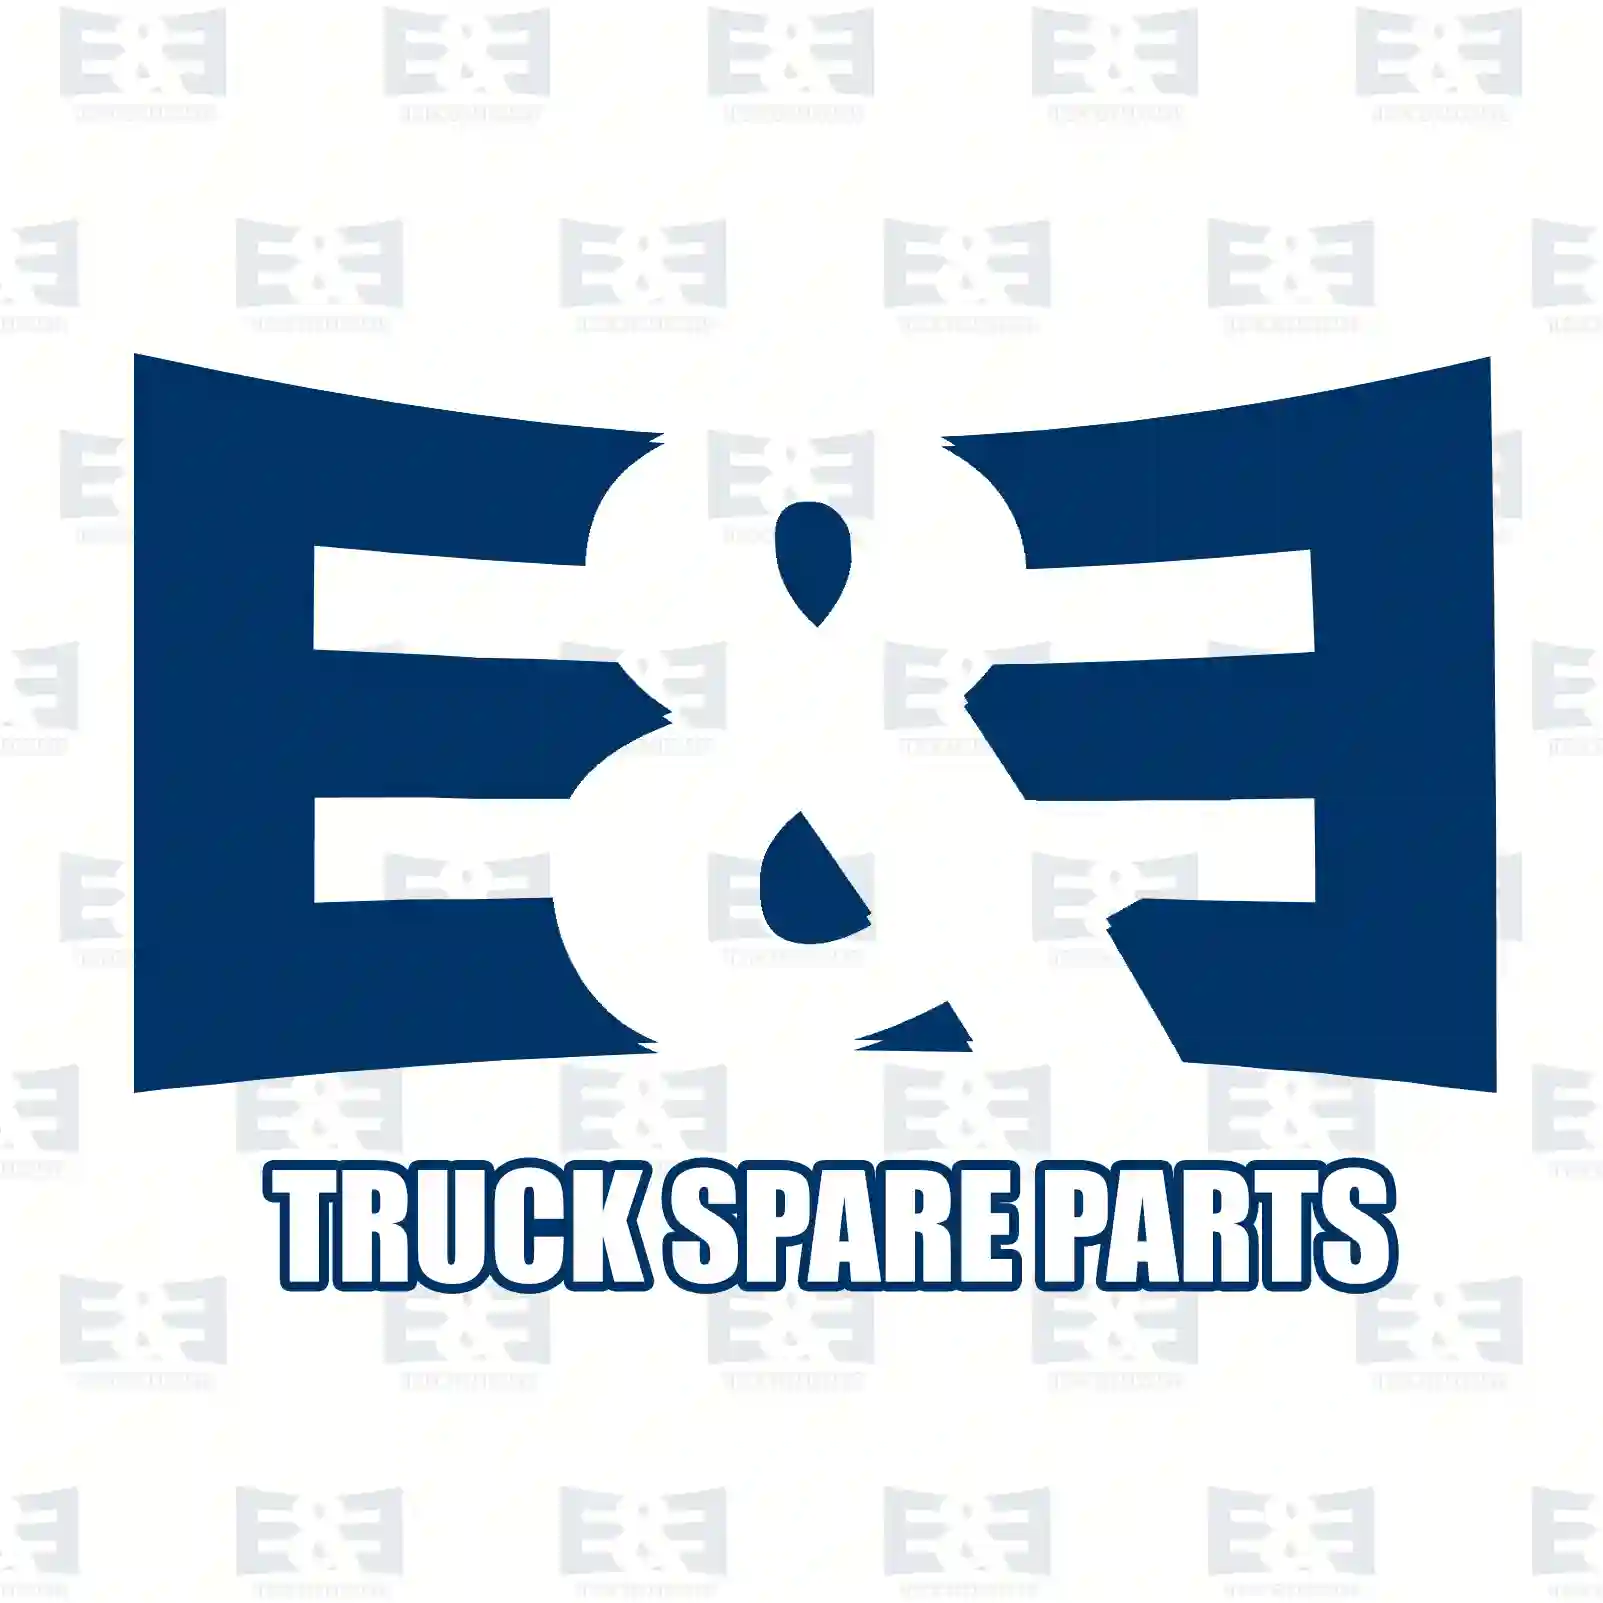 Air tank, 2E2295709, 0034329901, 0054322801, 0064325801, , ||  2E2295709 E&E Truck Spare Parts | Truck Spare Parts, Auotomotive Spare Parts Air tank, 2E2295709, 0034329901, 0054322801, 0064325801, , ||  2E2295709 E&E Truck Spare Parts | Truck Spare Parts, Auotomotive Spare Parts